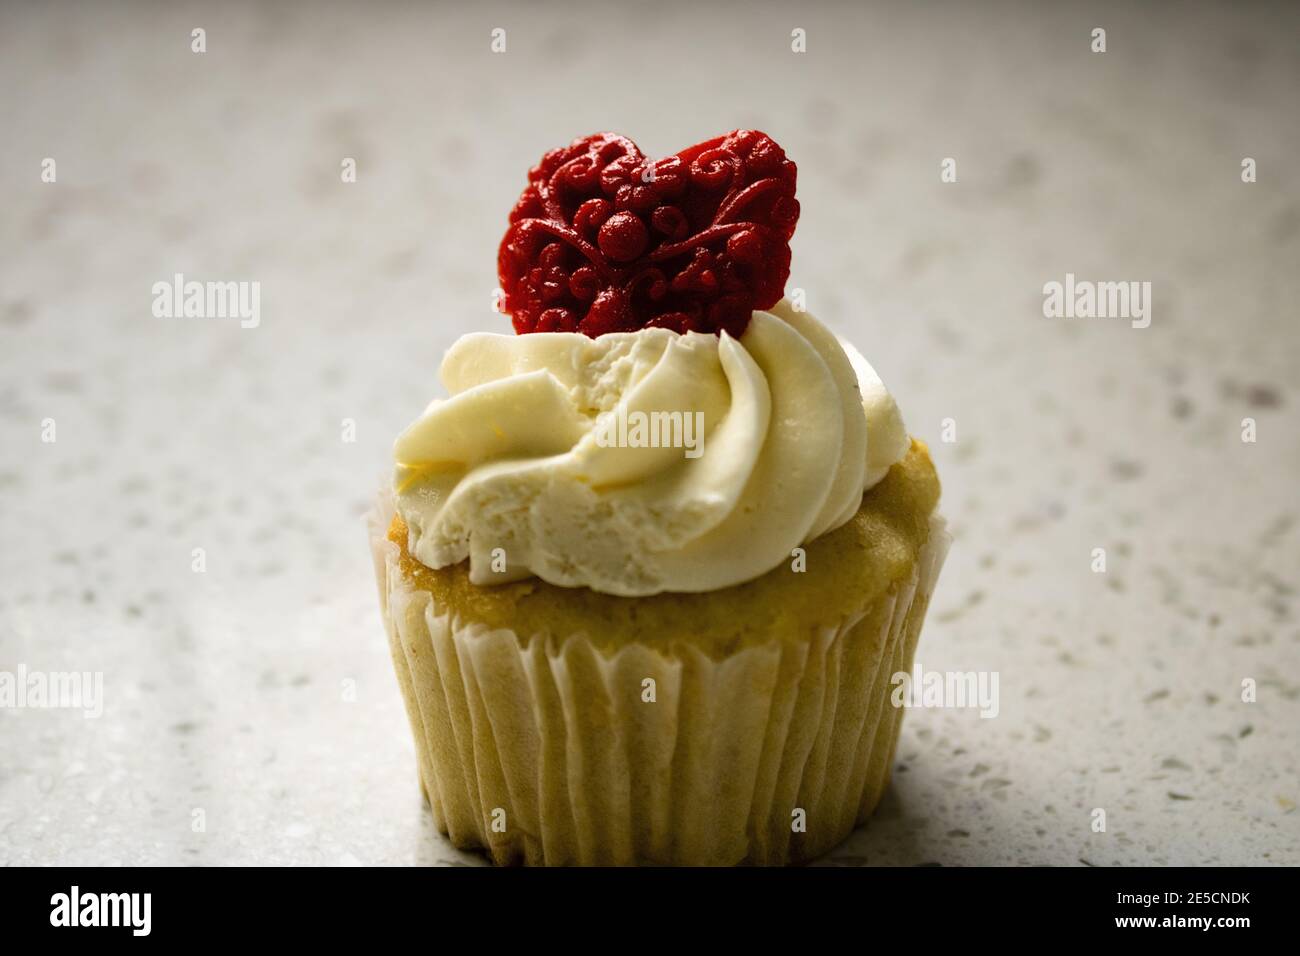 Gros plan du cupcake à la vanille avec glaçage à la crème au beurre blanc coeur rouge à motifs pour la saint-valentin Banque D'Images